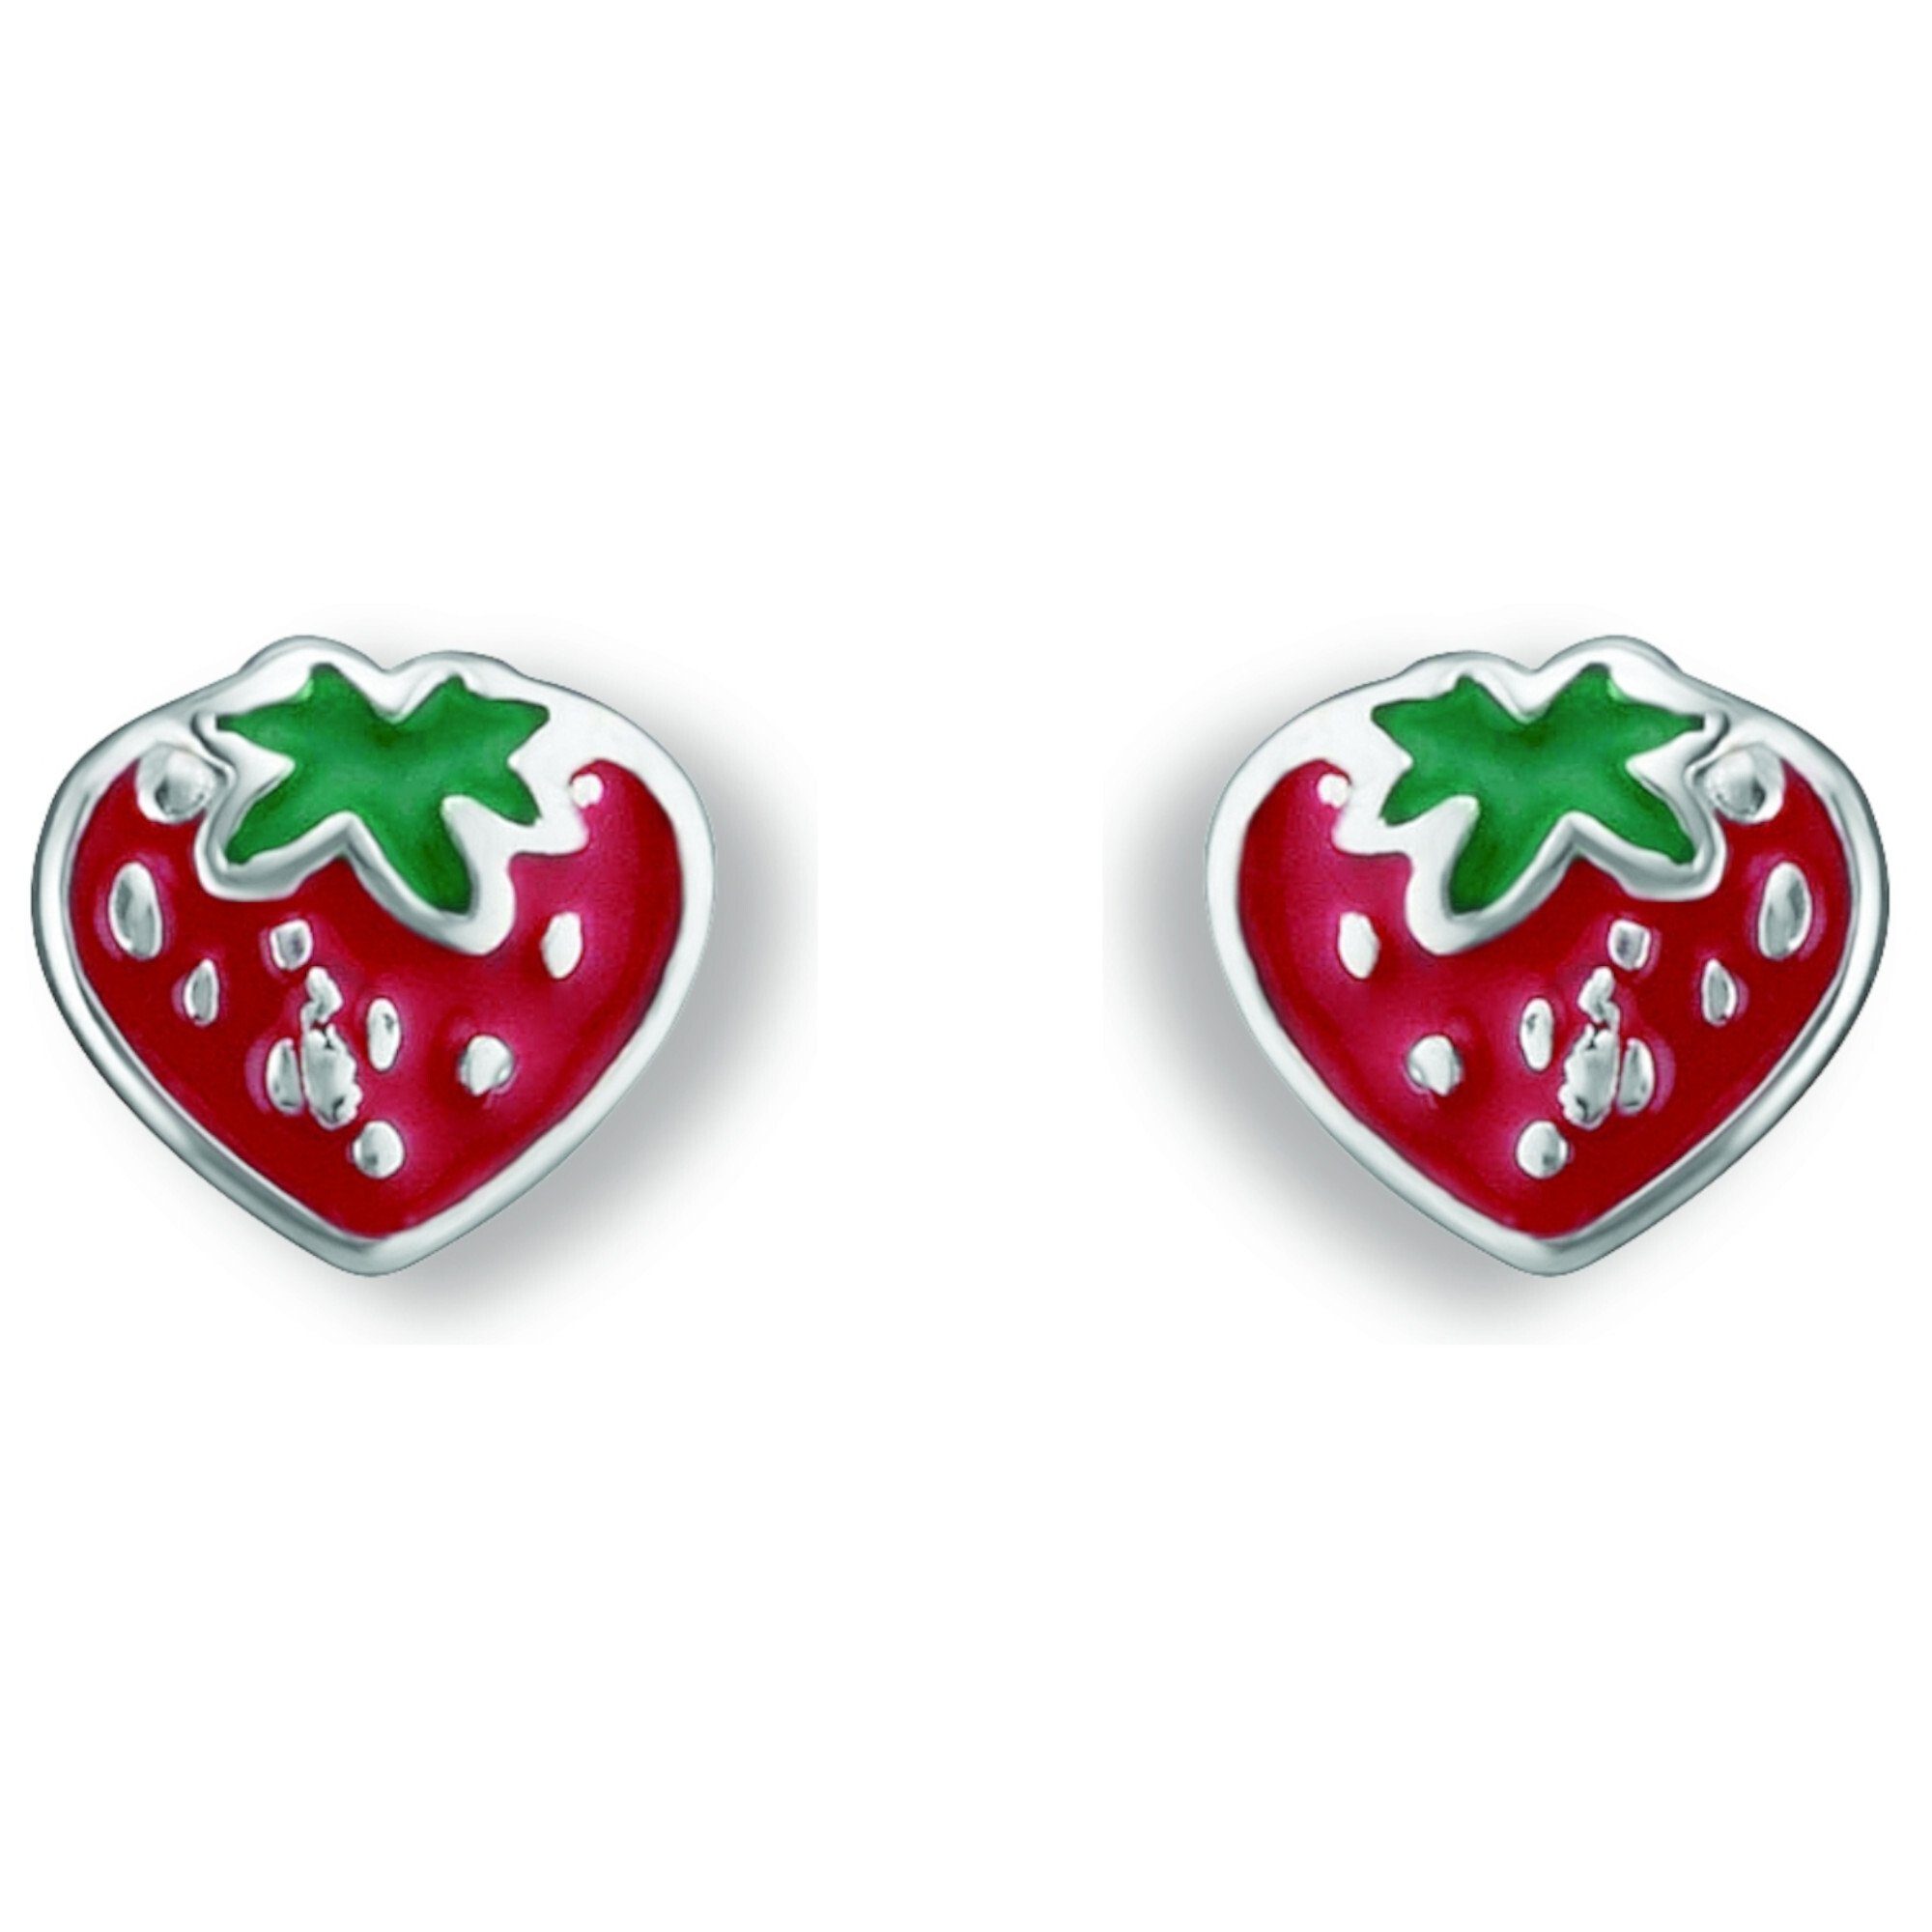 Preis für den Durchschnittsbürger ONE ELEMENT Paar Ohrstecker Erdbeere Erdbeere Silber Ohrstecker Ohrringe Damen Silber, 925 aus Schmuck